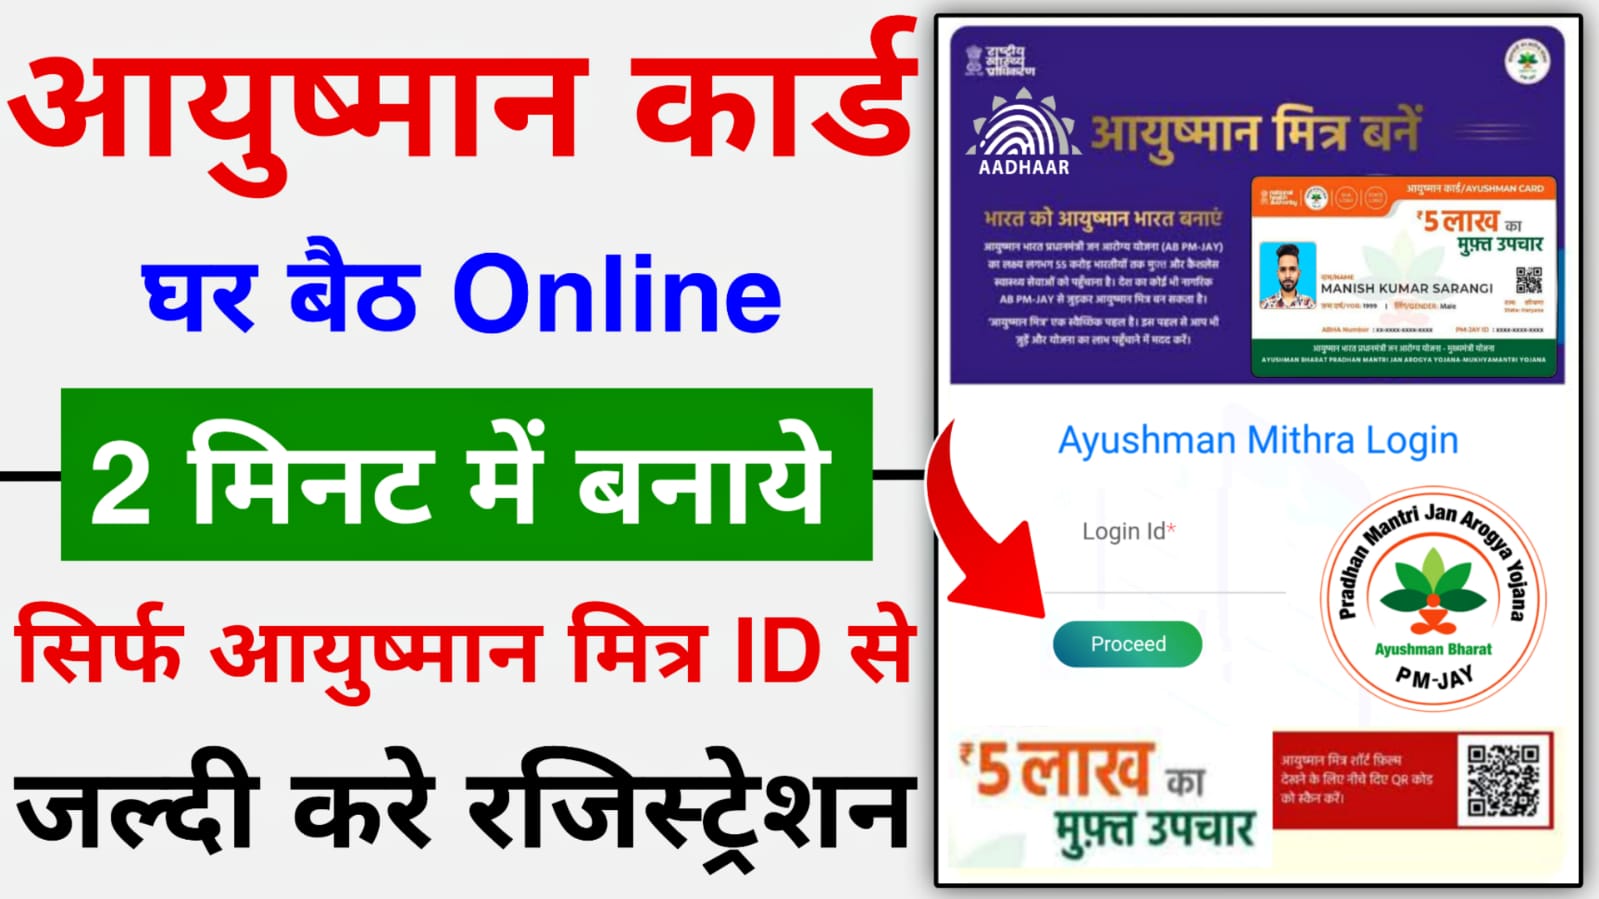 Ayushman Mitra Registration